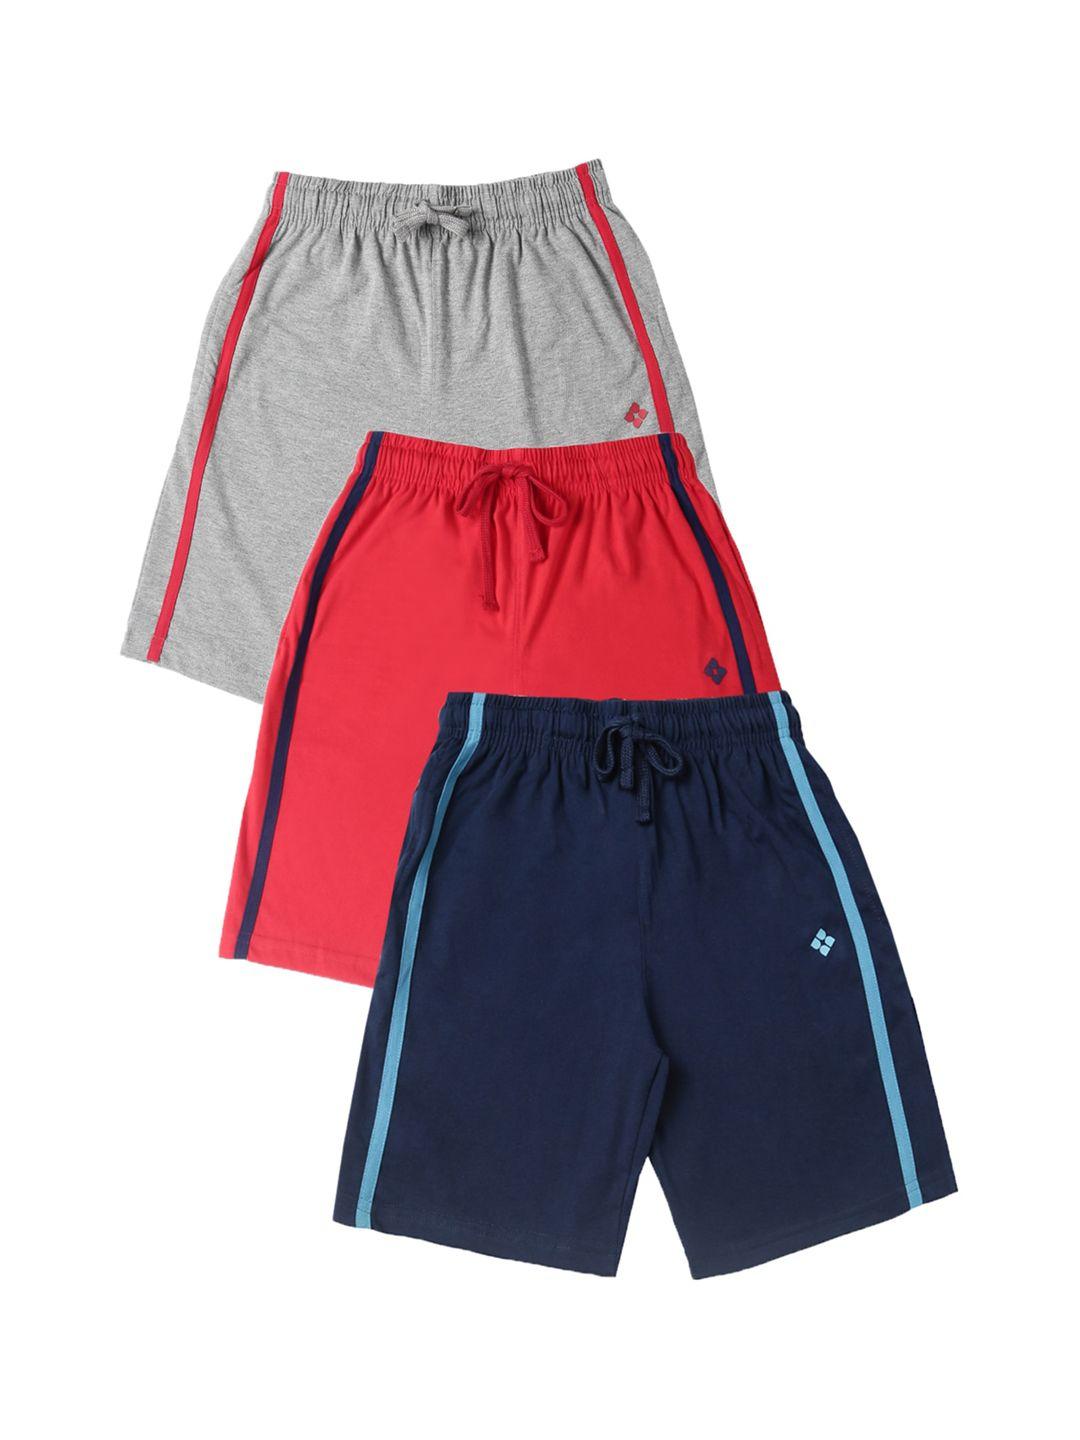 dollar boys pack of 3 shorts multicoloured solid regular fit regular shorts